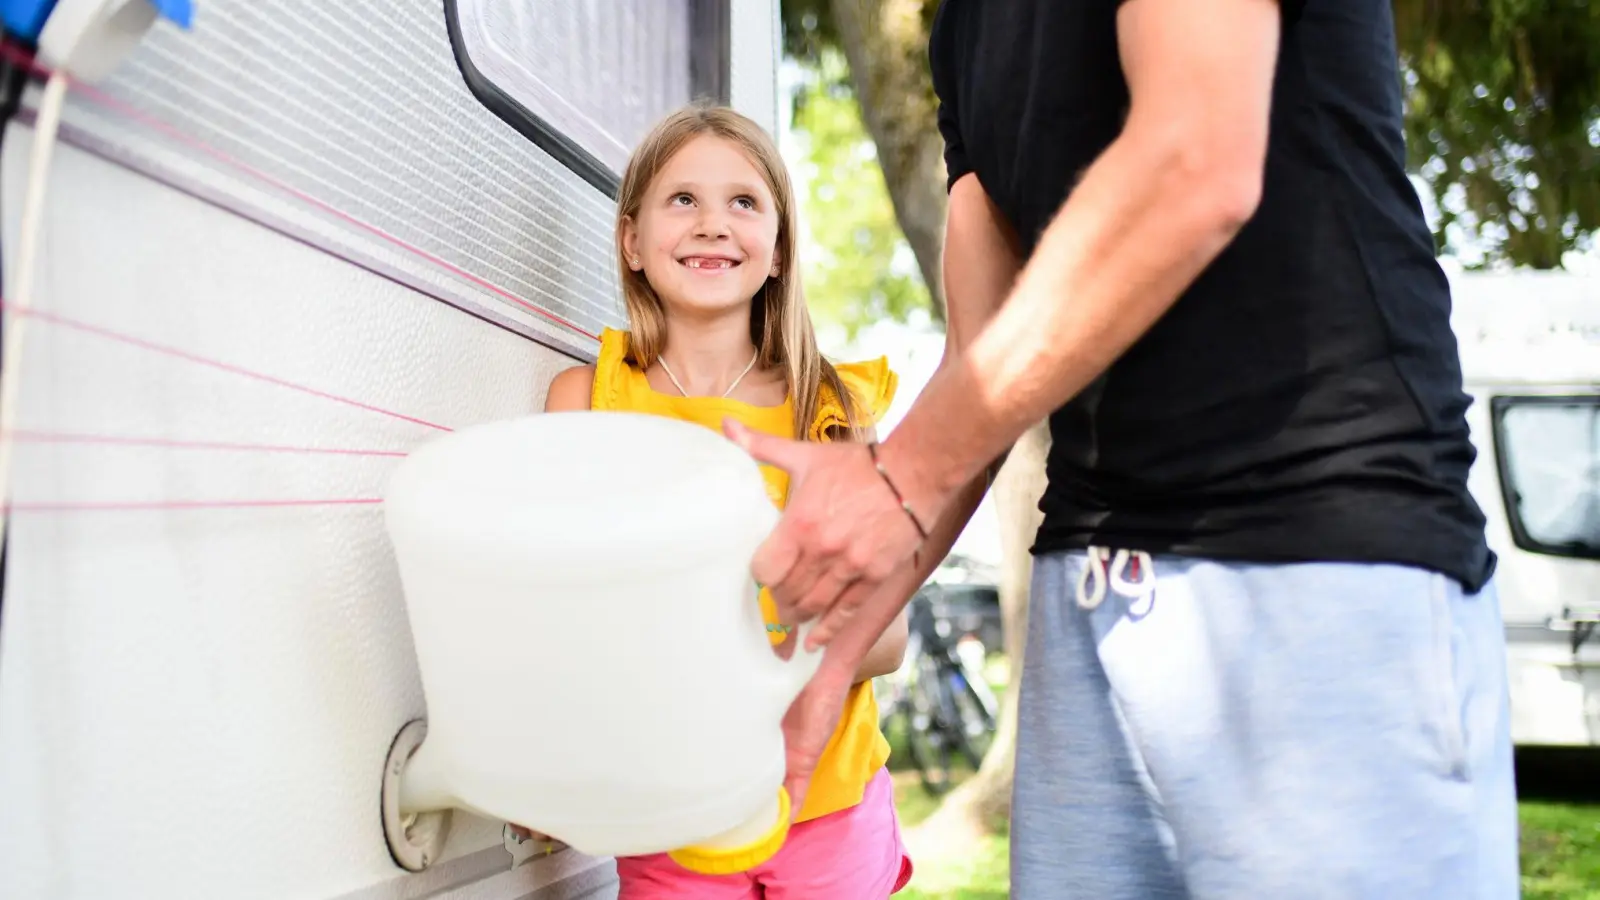 Um den Spritverbrauch zu minimieren, empfiehlt es sich, den Frischwassertank im Wohnmobil nur nach aktuellem Bedarf zu füllen. (Foto: Tobias Hase/dpa-tmn/dpa)